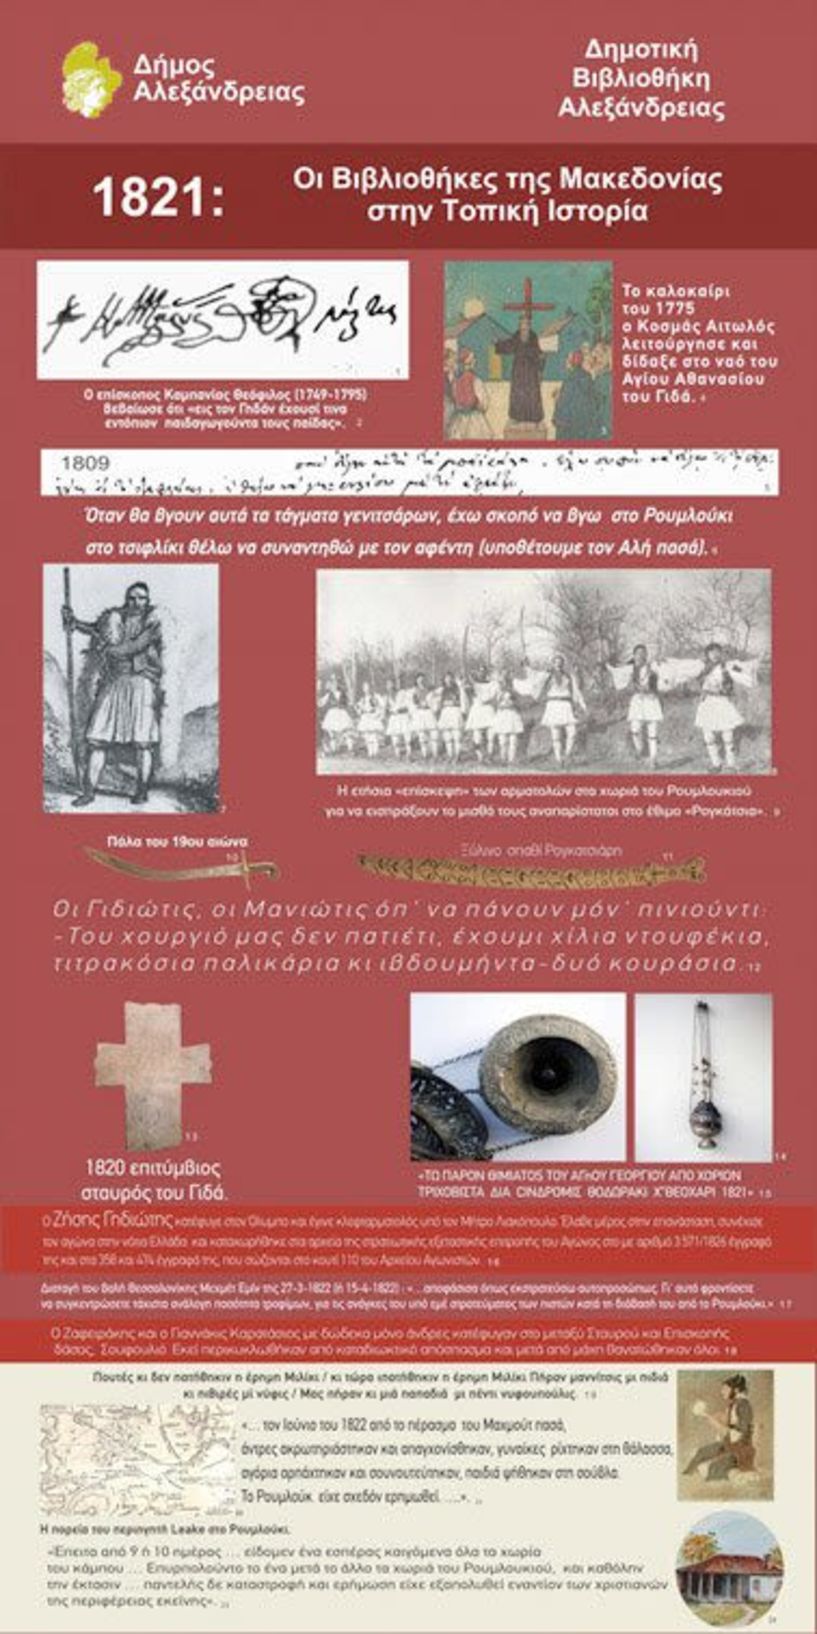 1821-2021: “Οι Βιβλιοθήκες της Μακεδονίας στην τοπική Ιστορία” - Έκθεση με τη συμμετοχή της Δημοτικής Βιβλιοθήκης Αλεξάνδρειας